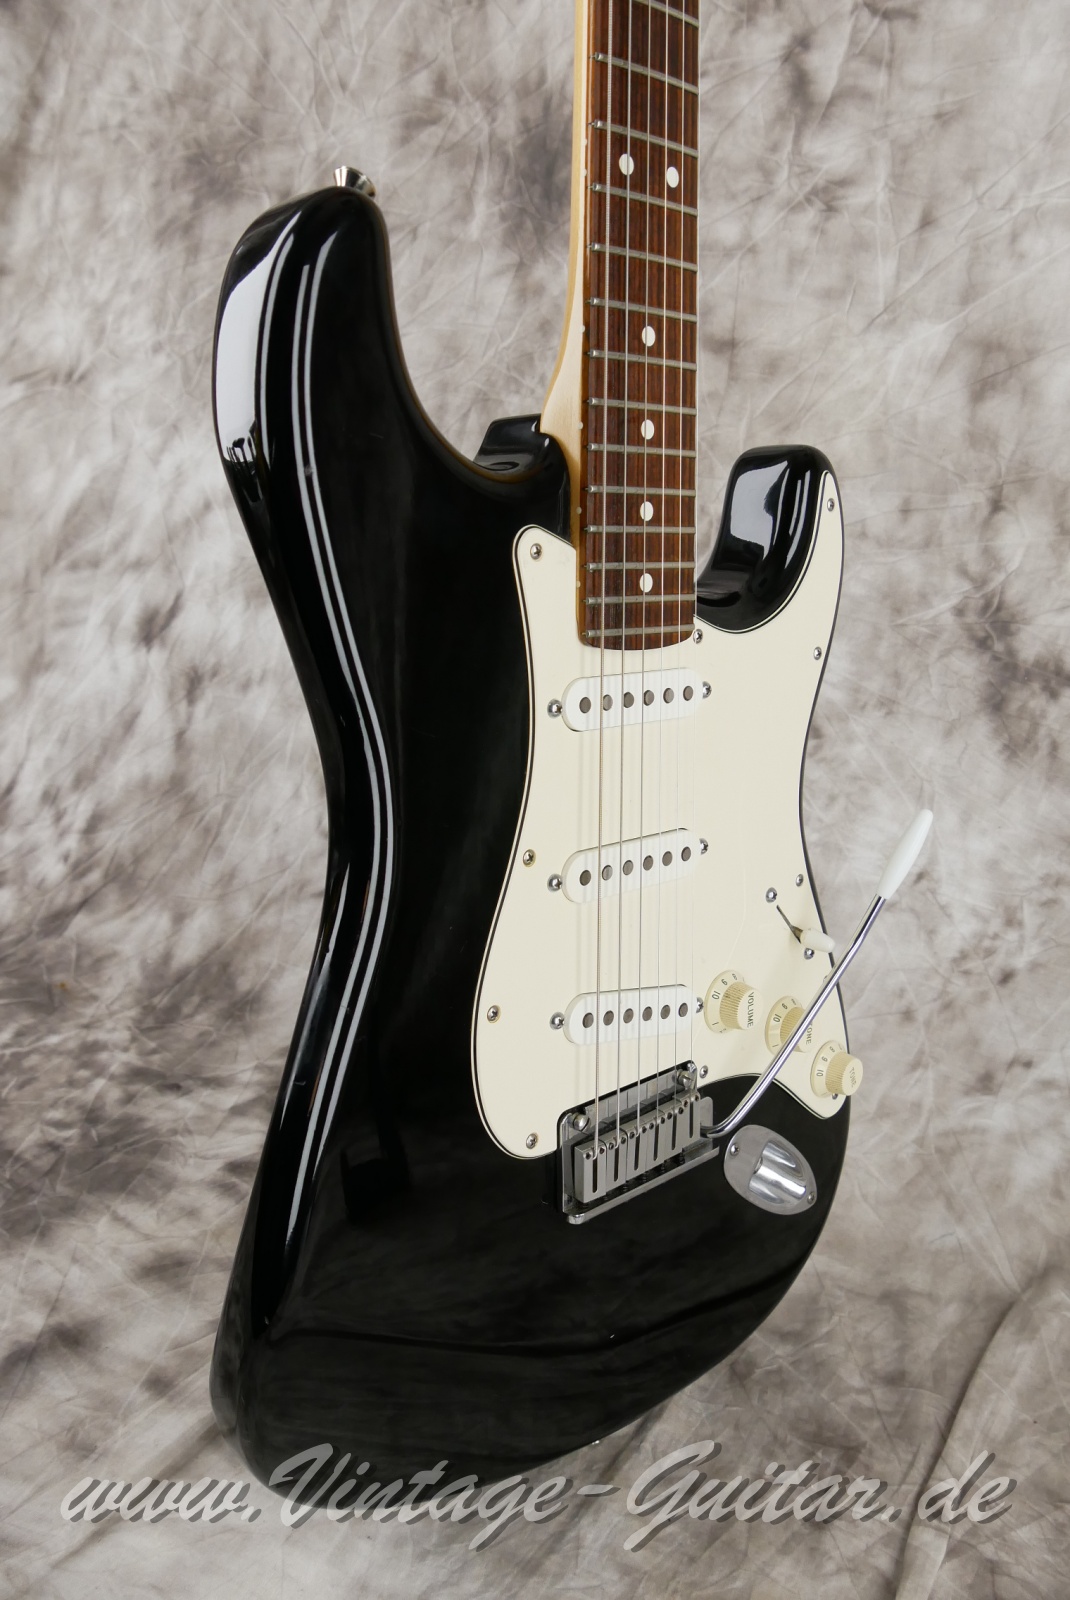 Fender-Stratocaster-American-Standard-1987-black-005.JPG